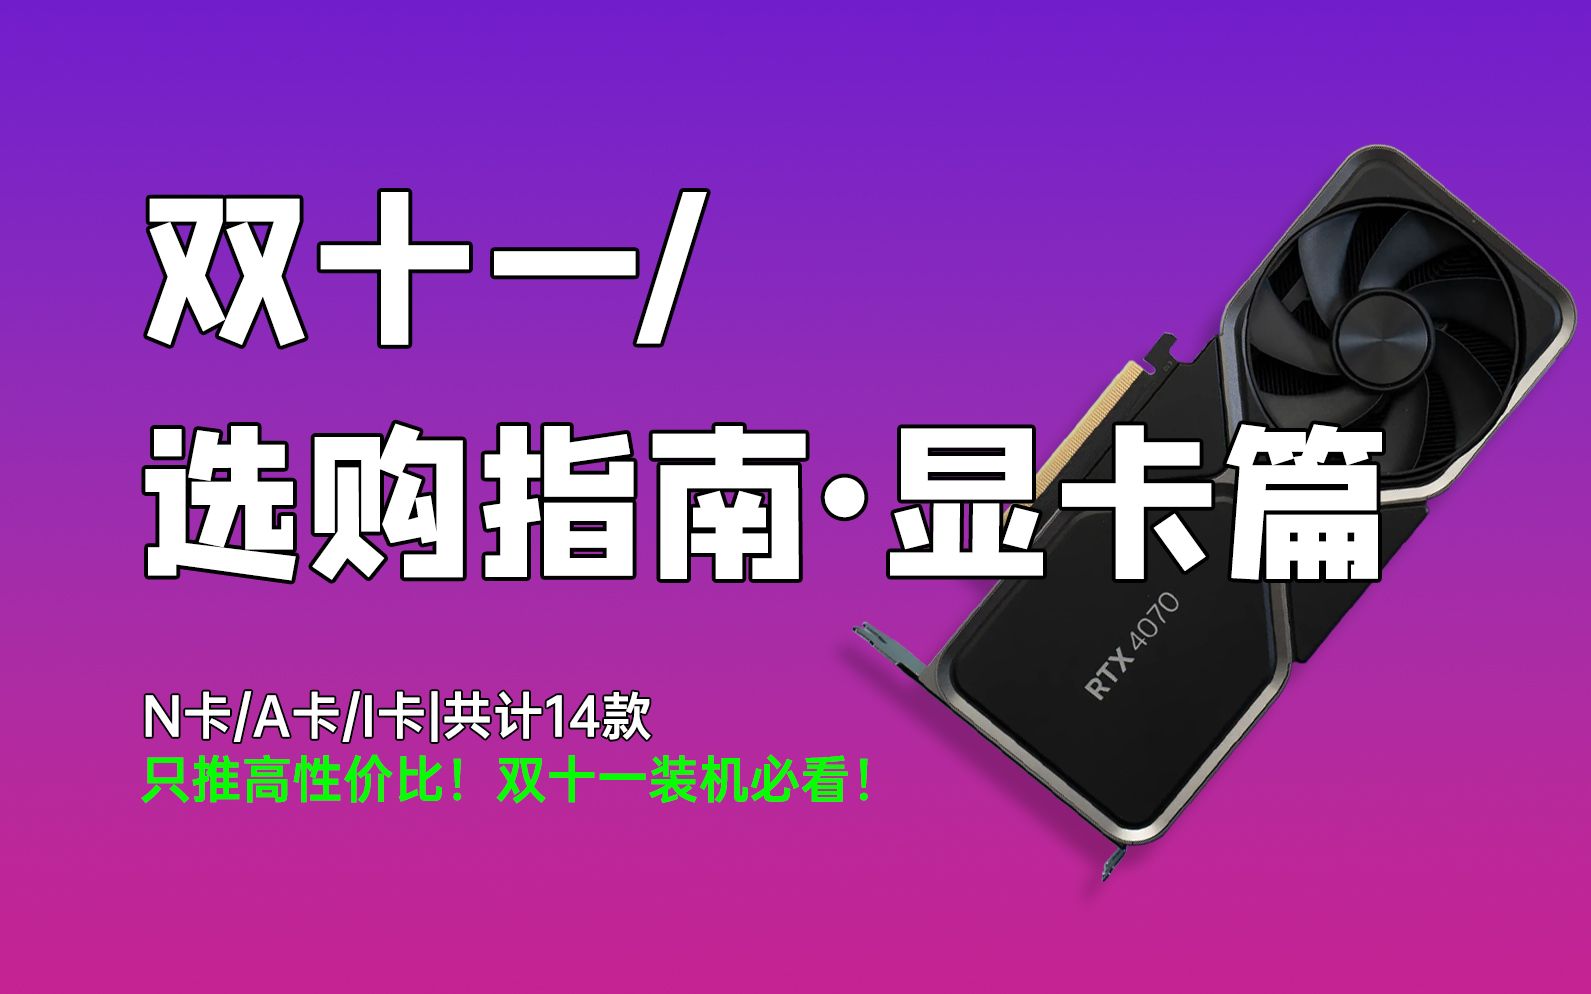 中国知名品牌七彩虹GTX1080价格分析及购买建议，助您选购理想显卡产品